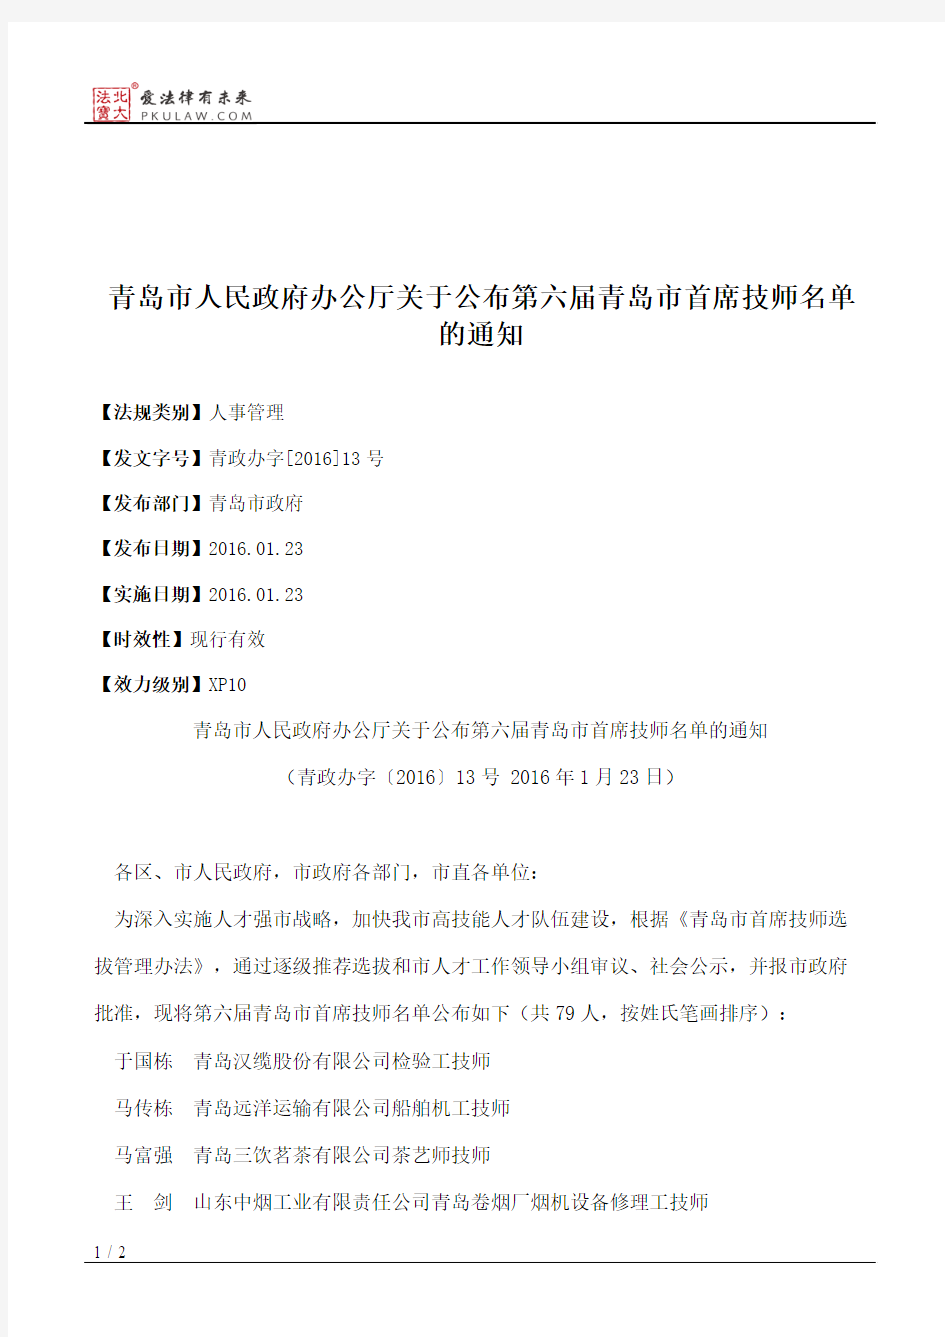 青岛市人民政府办公厅关于公布第六届青岛市首席技师名单的通知